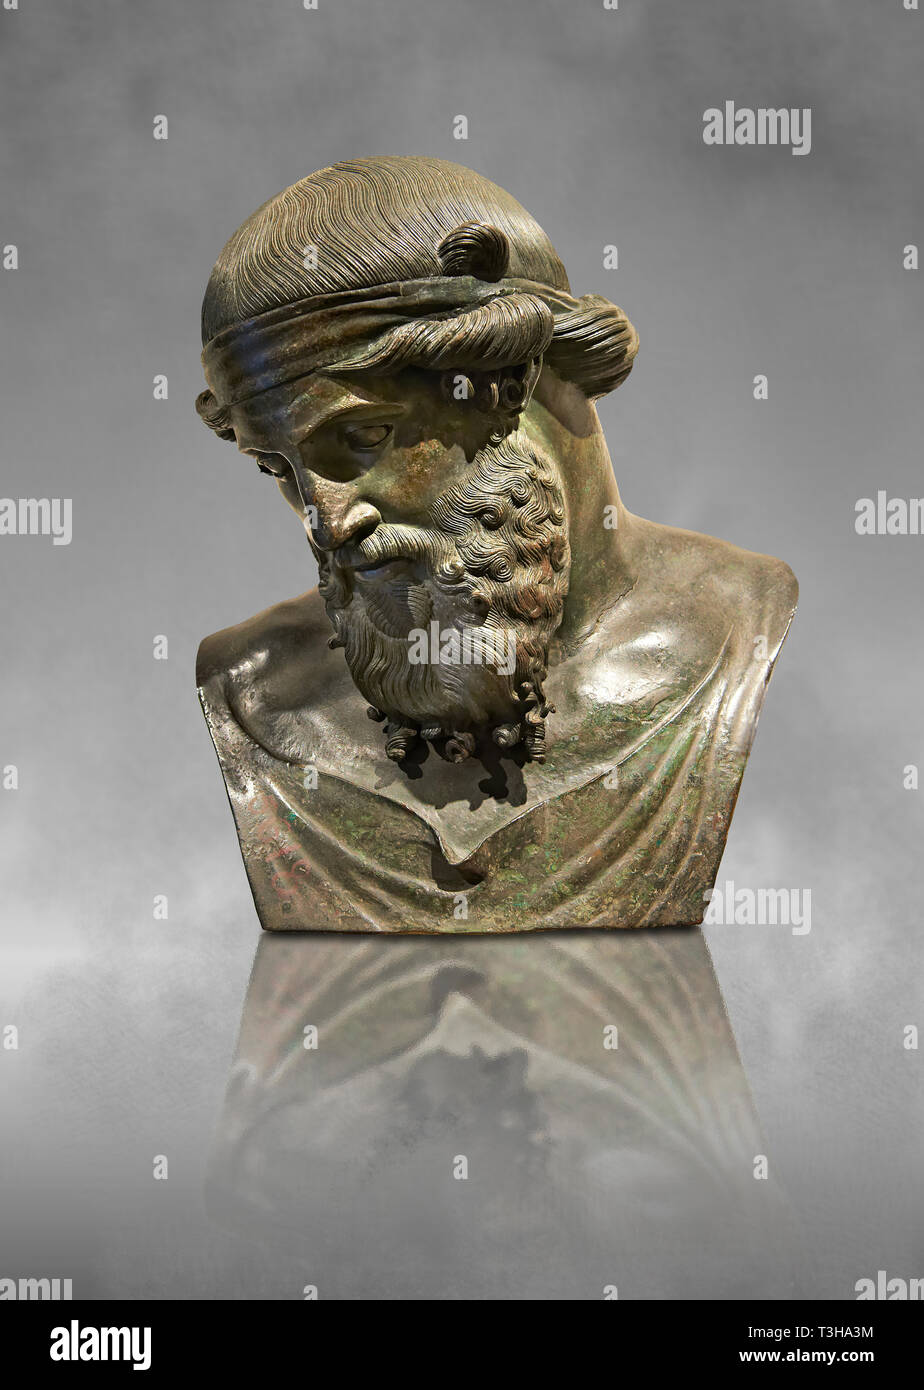 Roman Bronze Skulptur von dinoysus - Plato, Museum für Archäologie, Italien Stockfoto